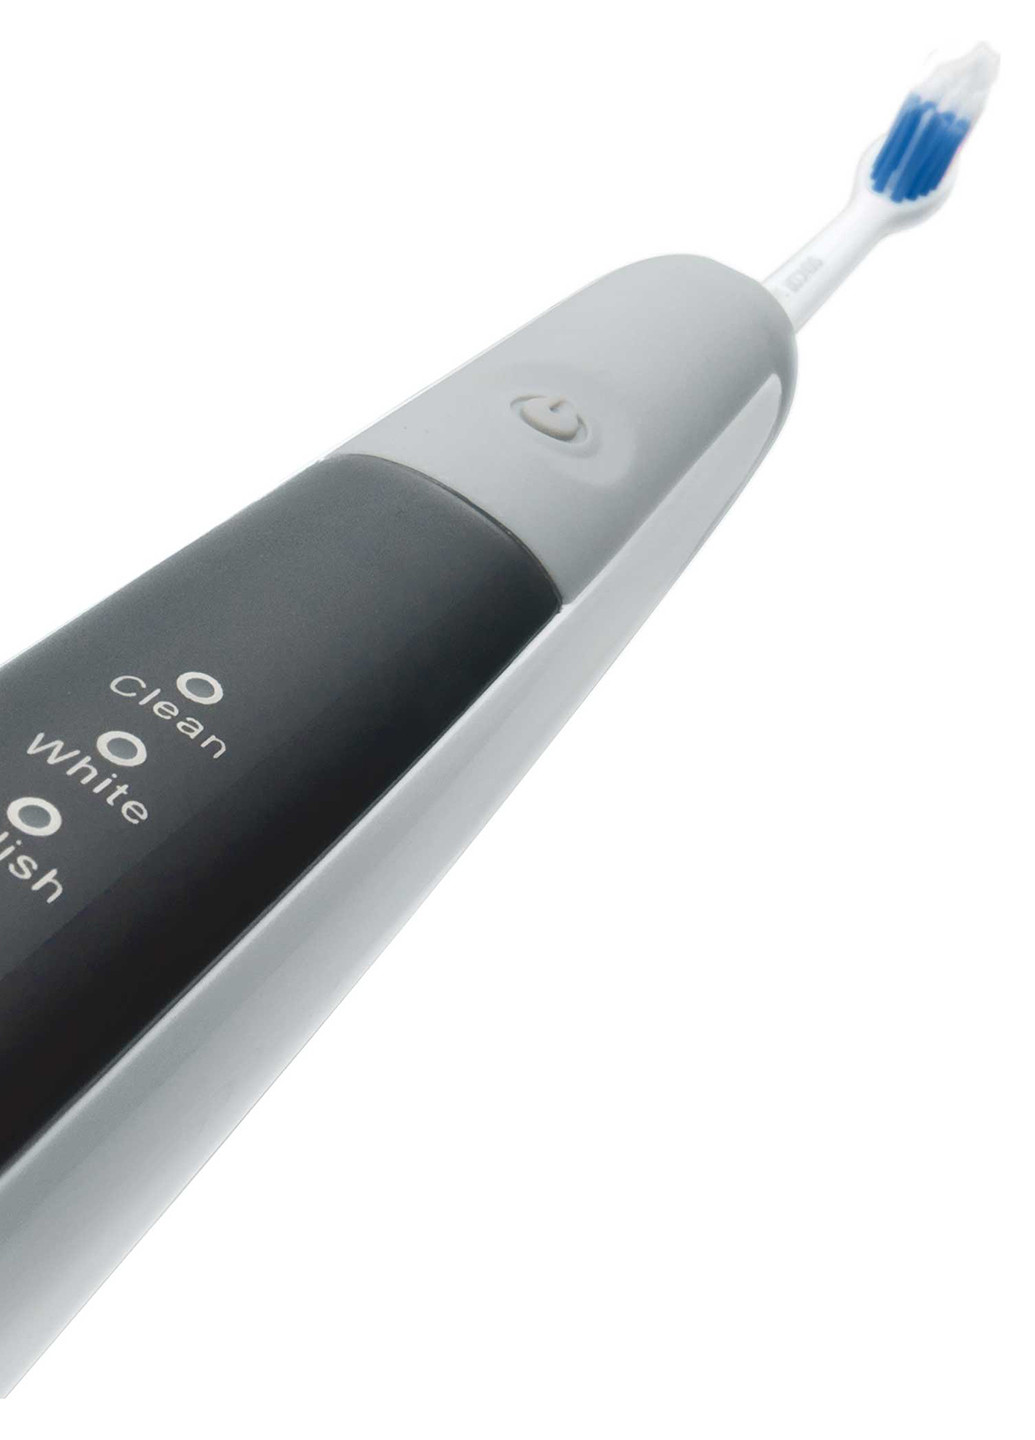 Электрическая зубная щетка Sencor soc 2200 sl (130617758)